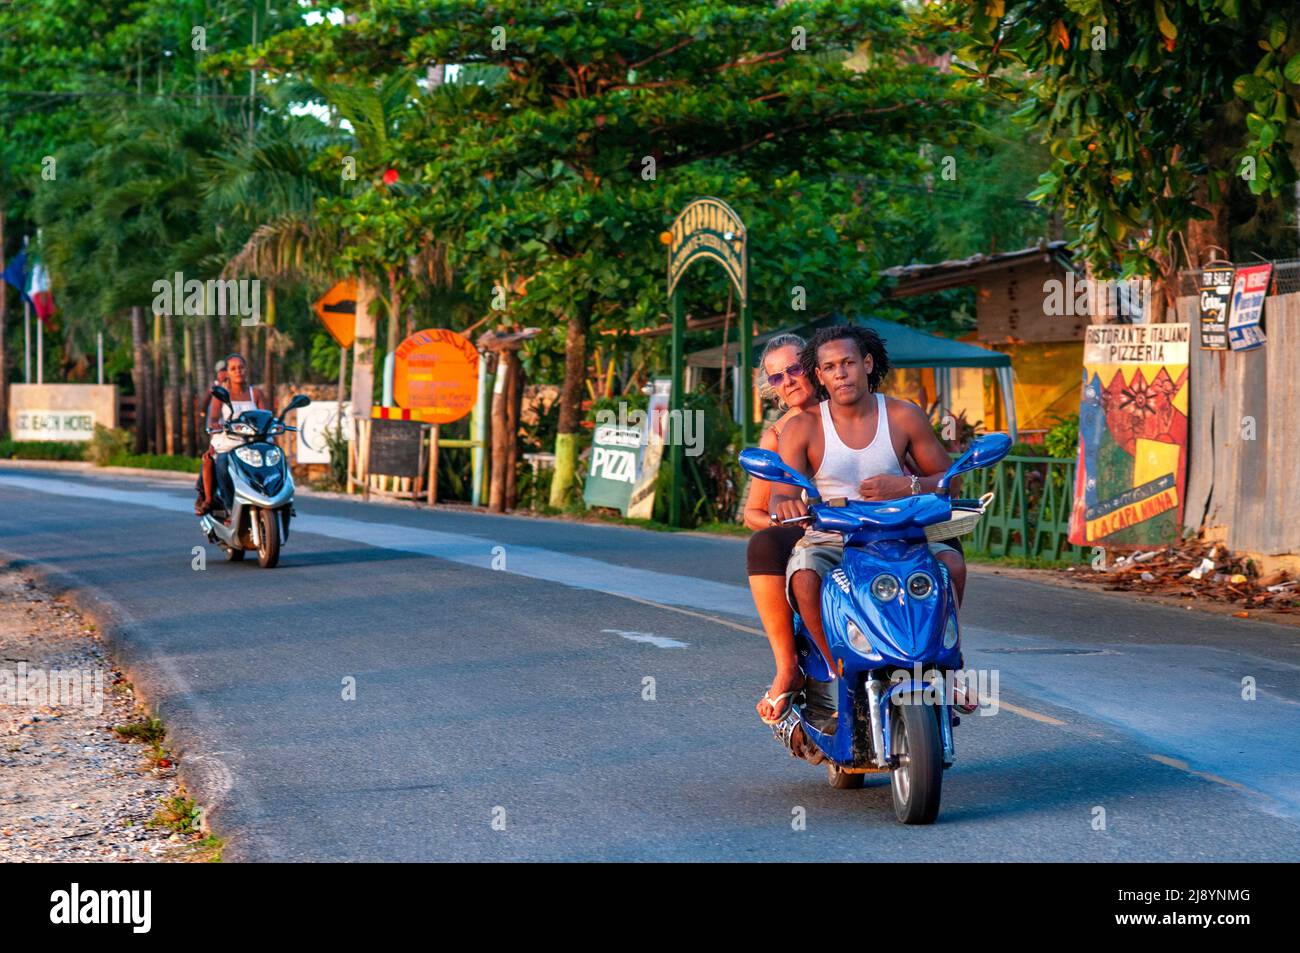 Moto taxi en moto frente a la playa de Las Terrenas, Samana, República Dominicana, Caribe, América. Playa tropical caribeña con palma de coco Foto de stock